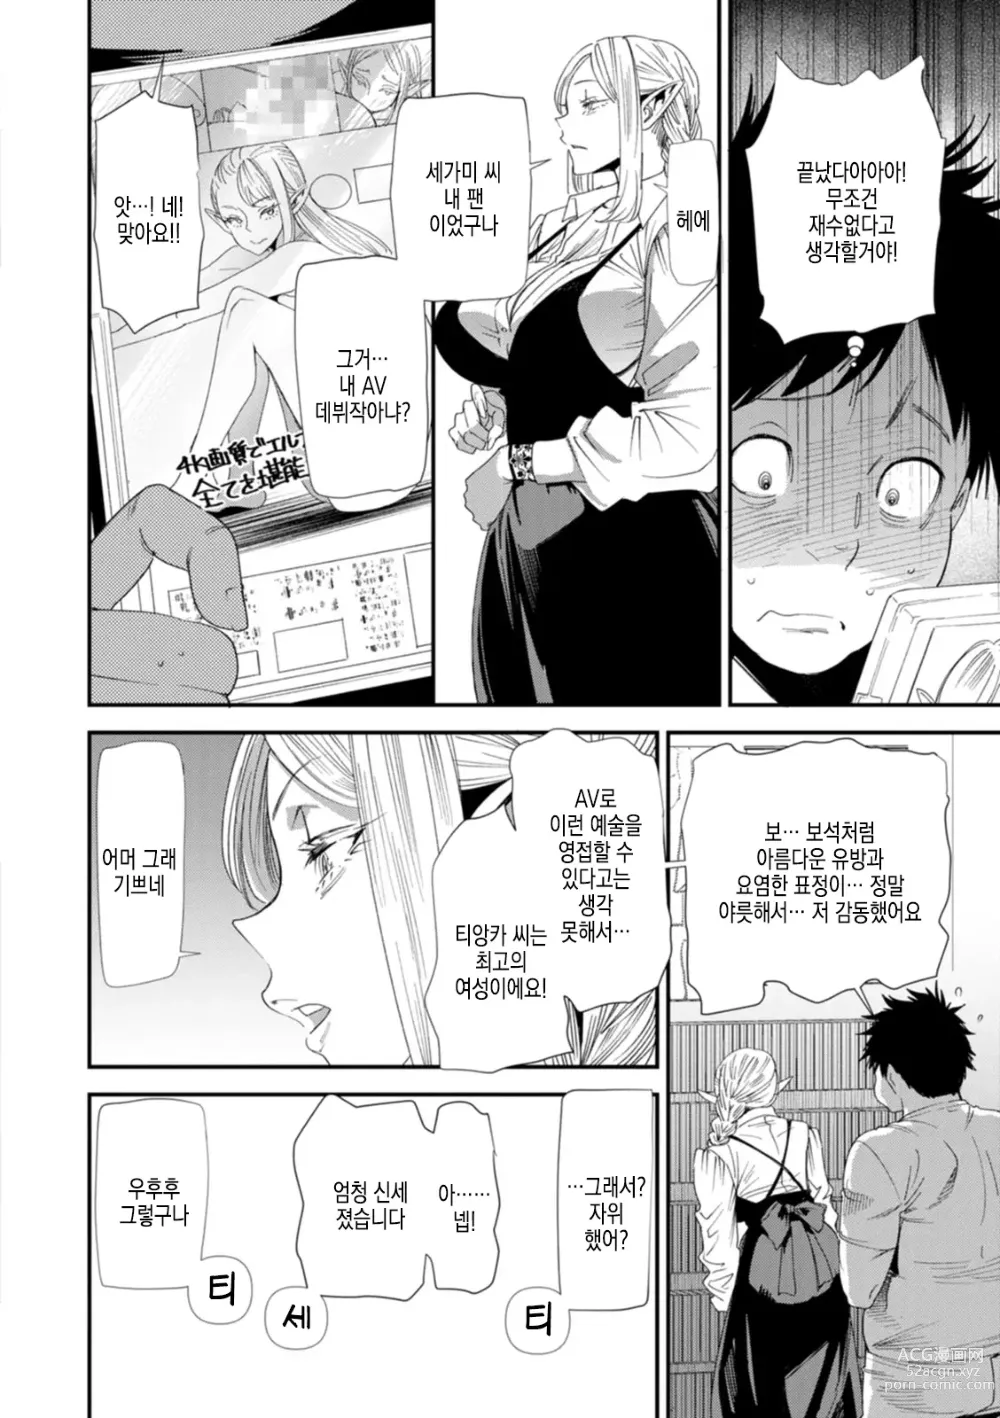 Page 29 of manga AV 데뷔한 유부녀 엘프는 진심절정의 꿈을 꾸는가?